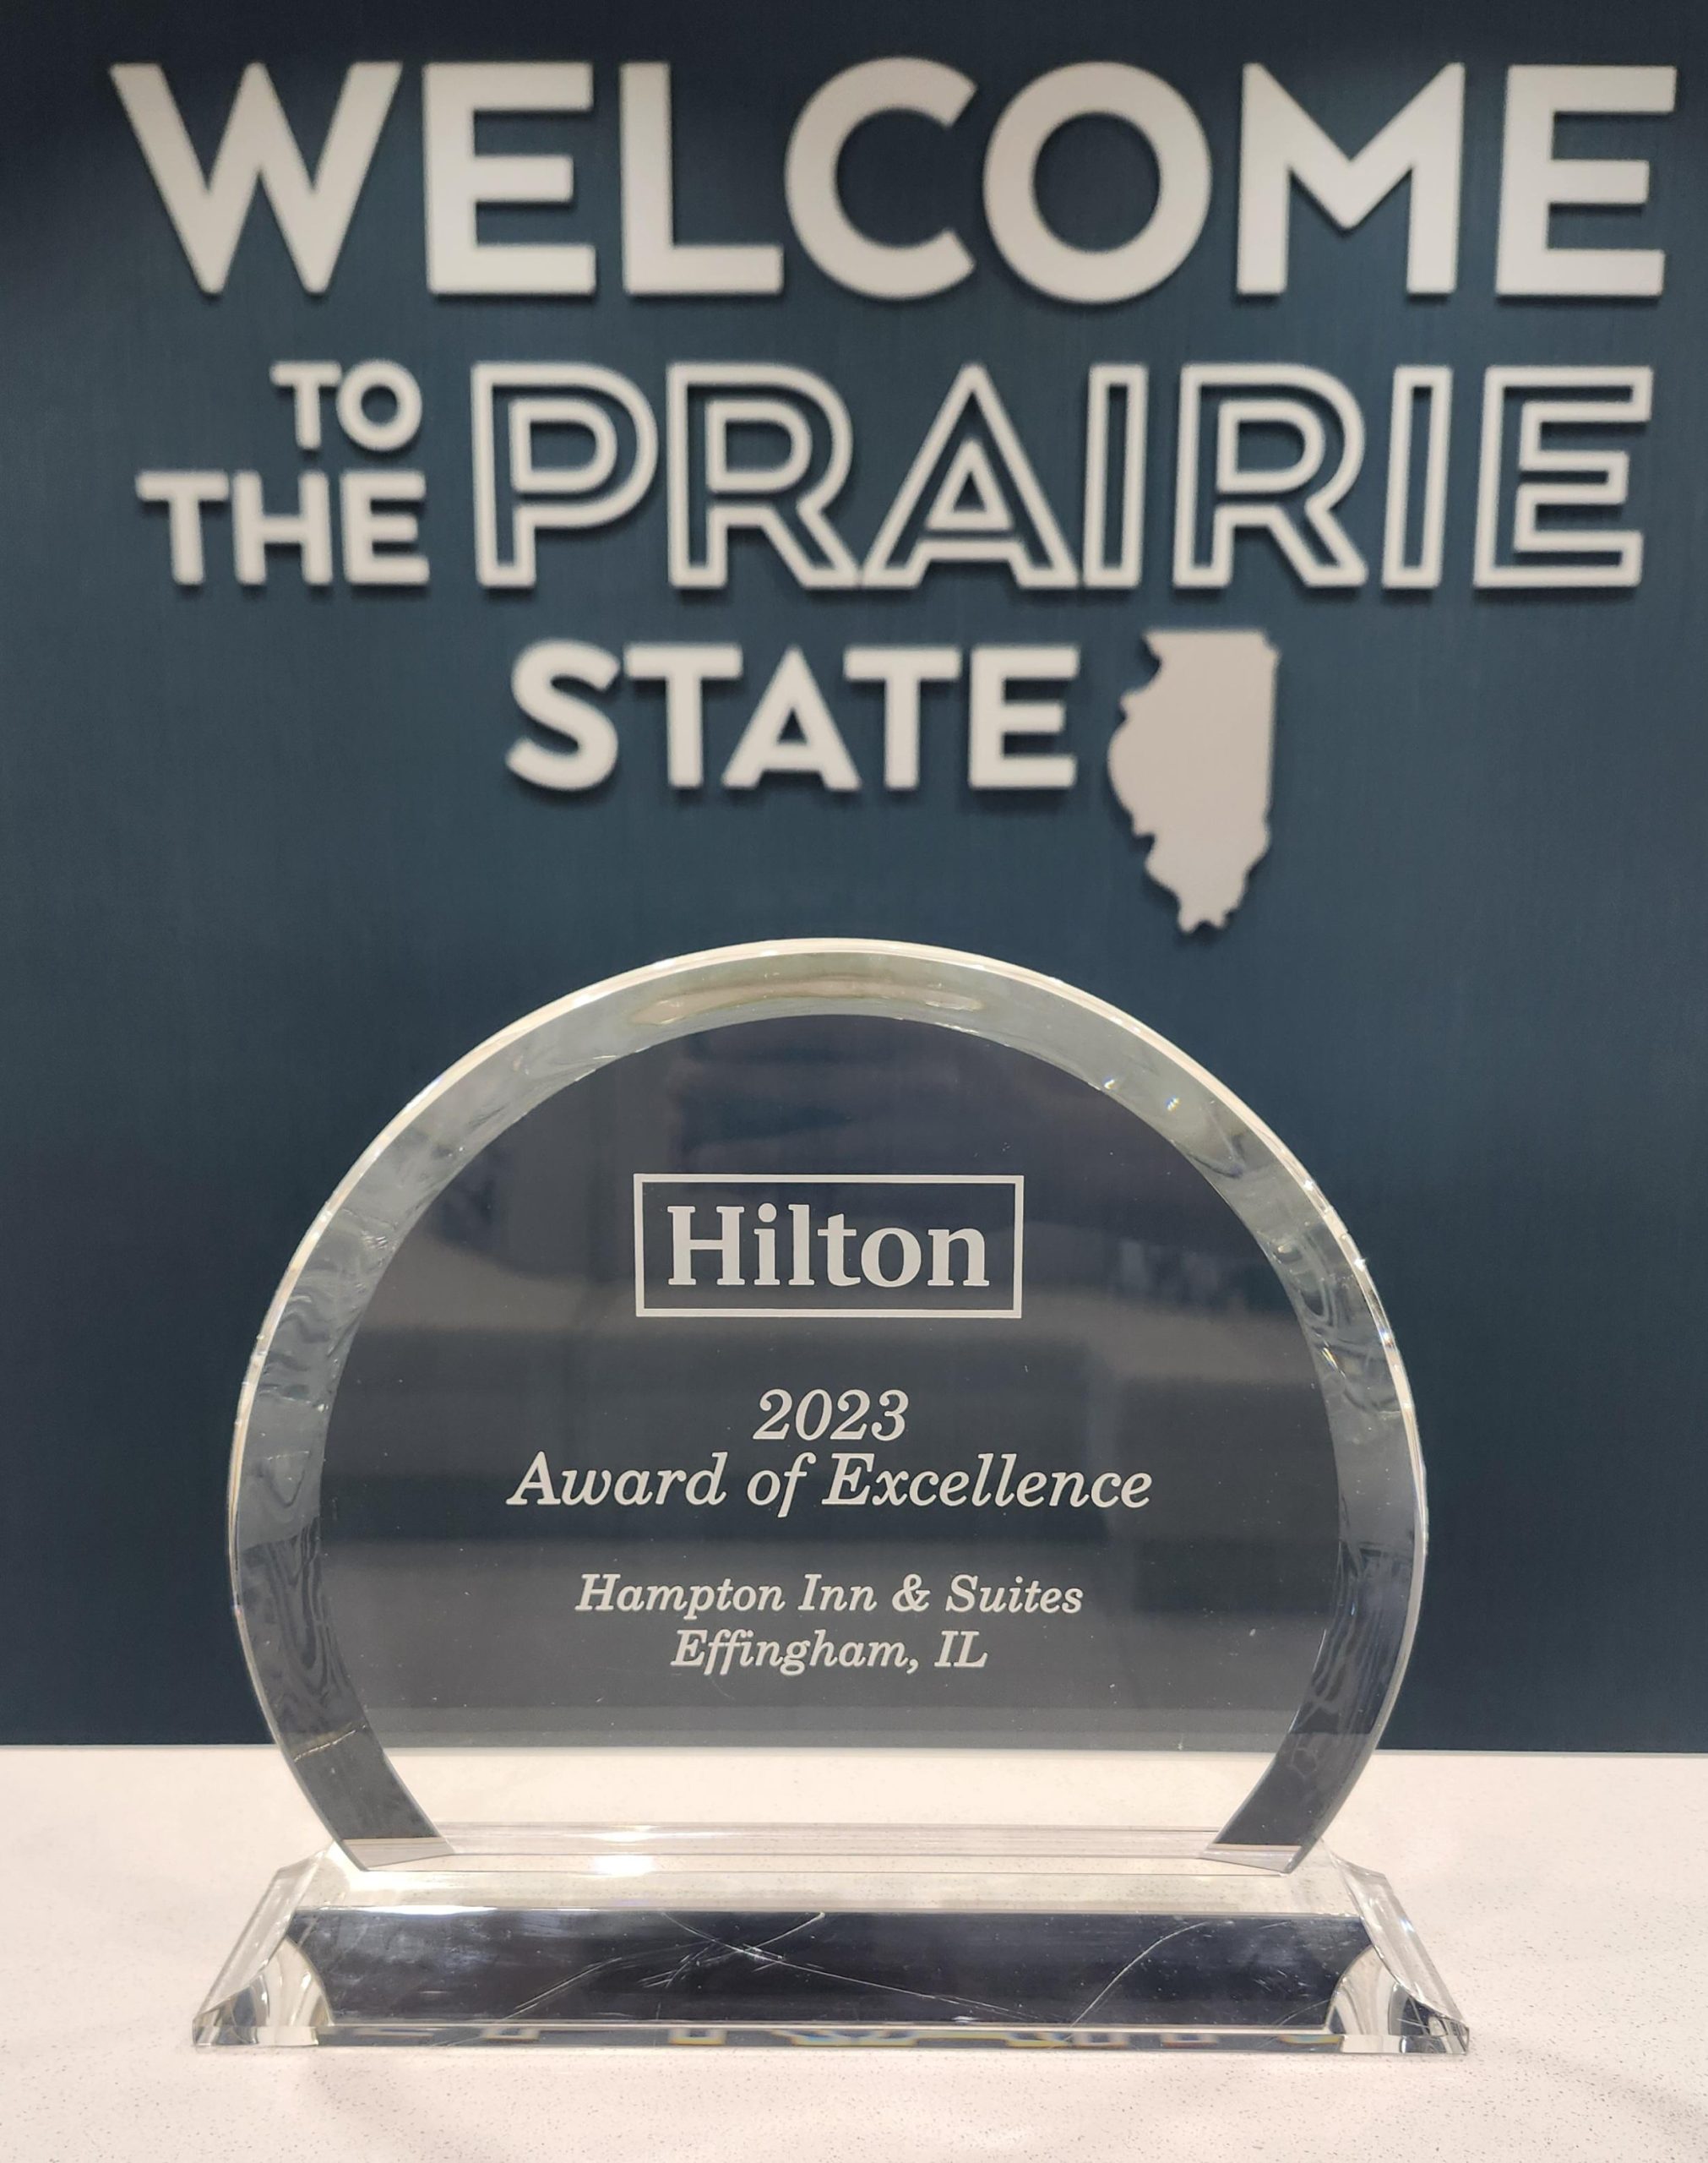 Hilton Award of Excellence